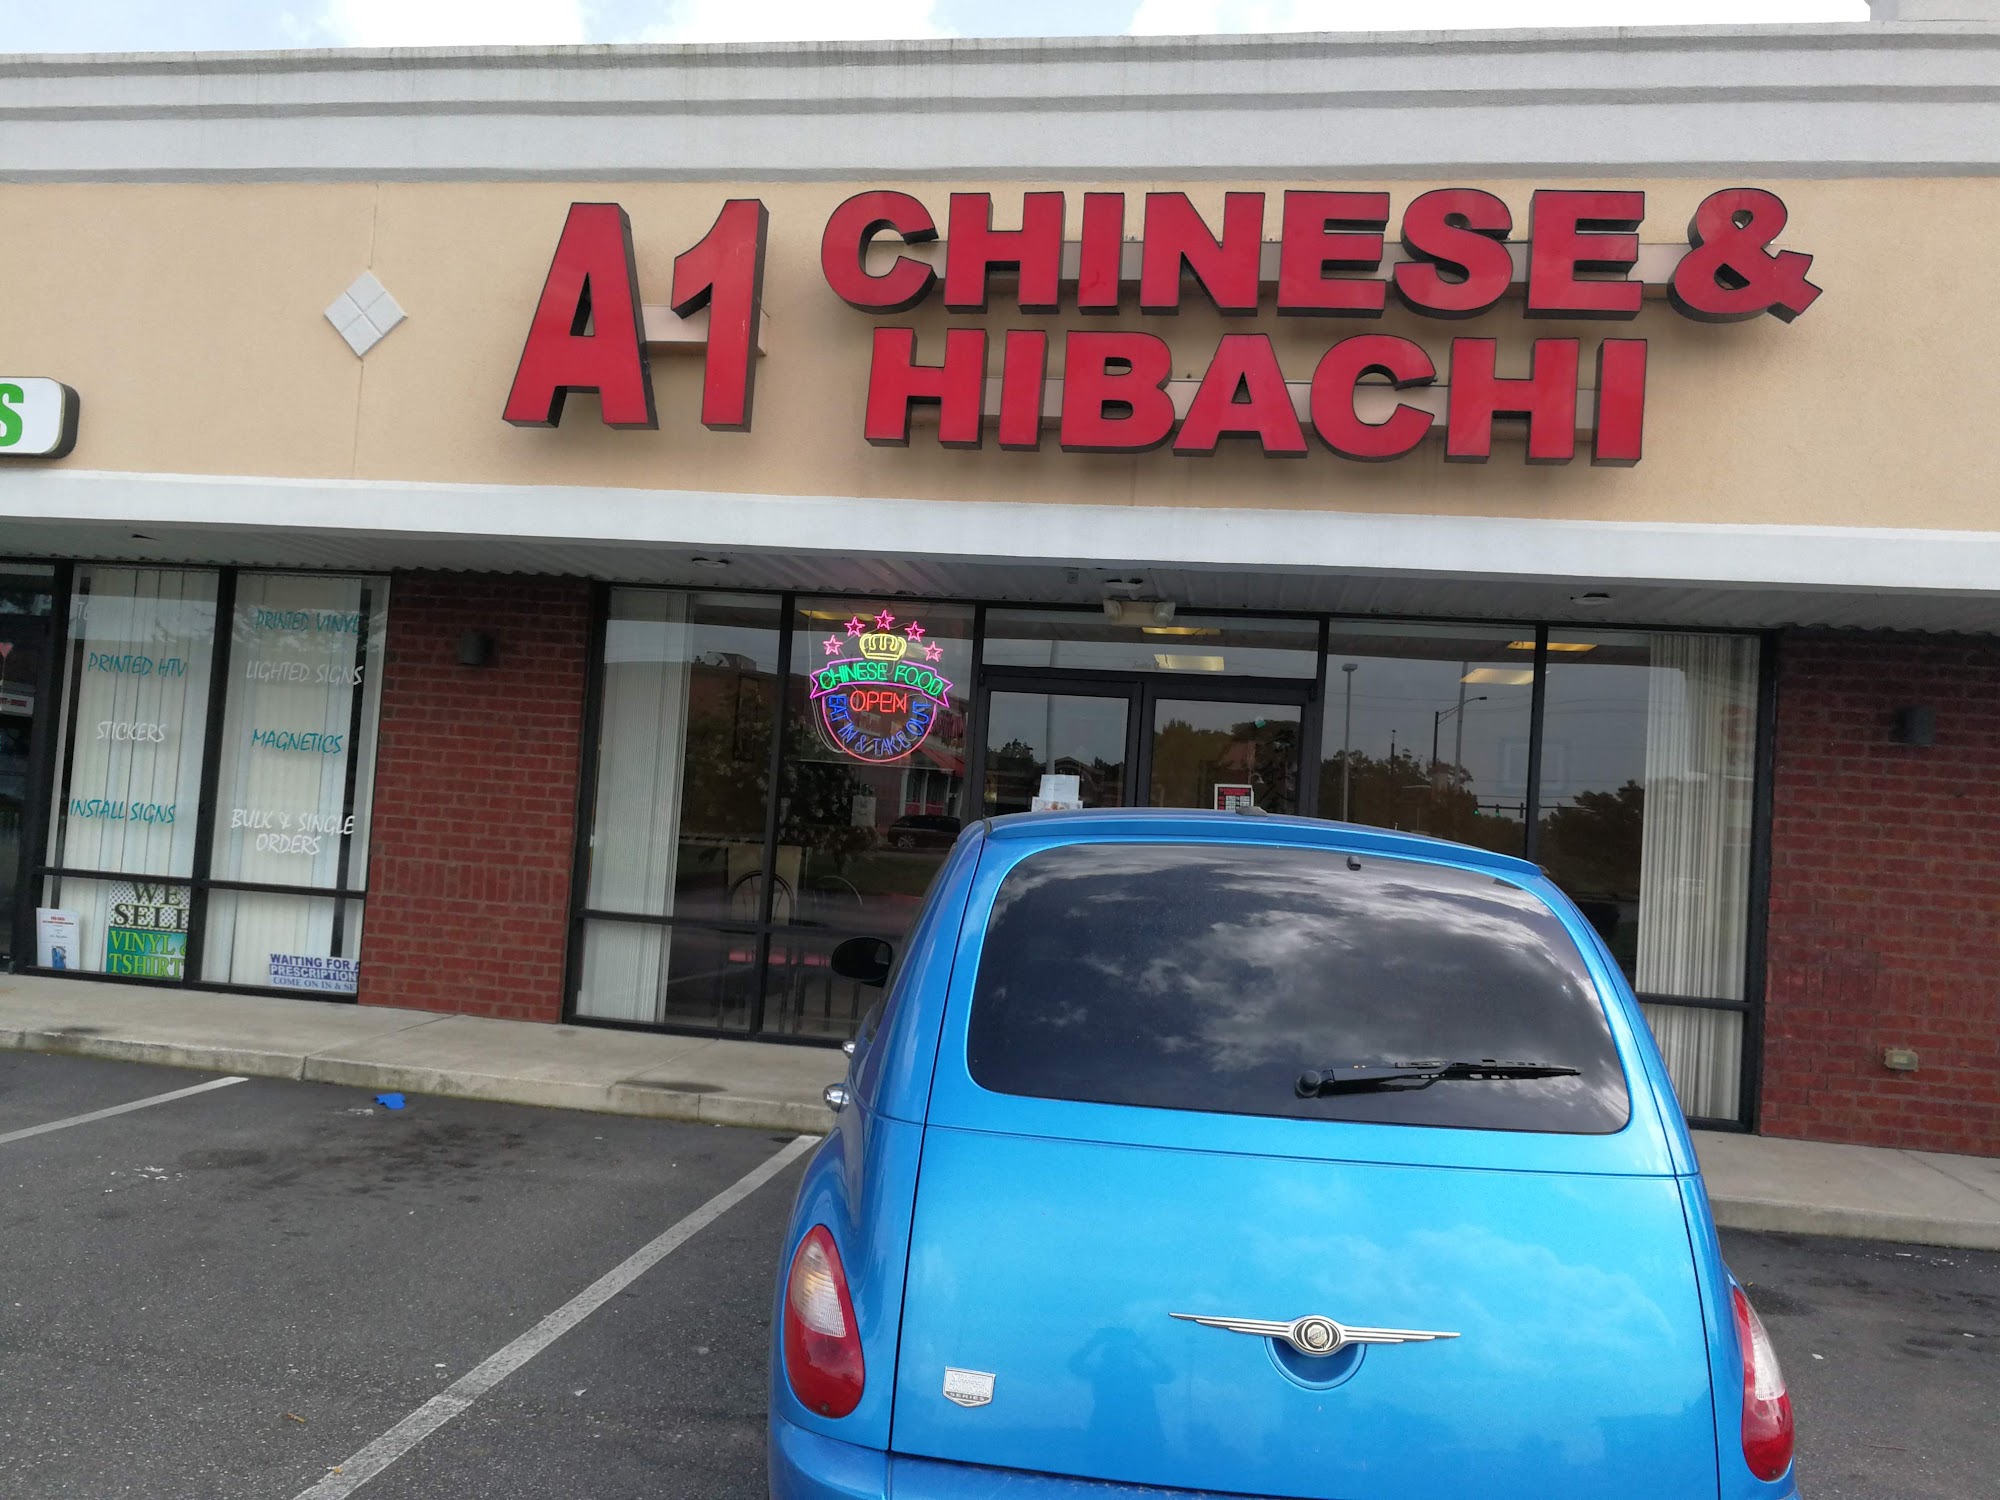 A1 Chinese & Hibachi